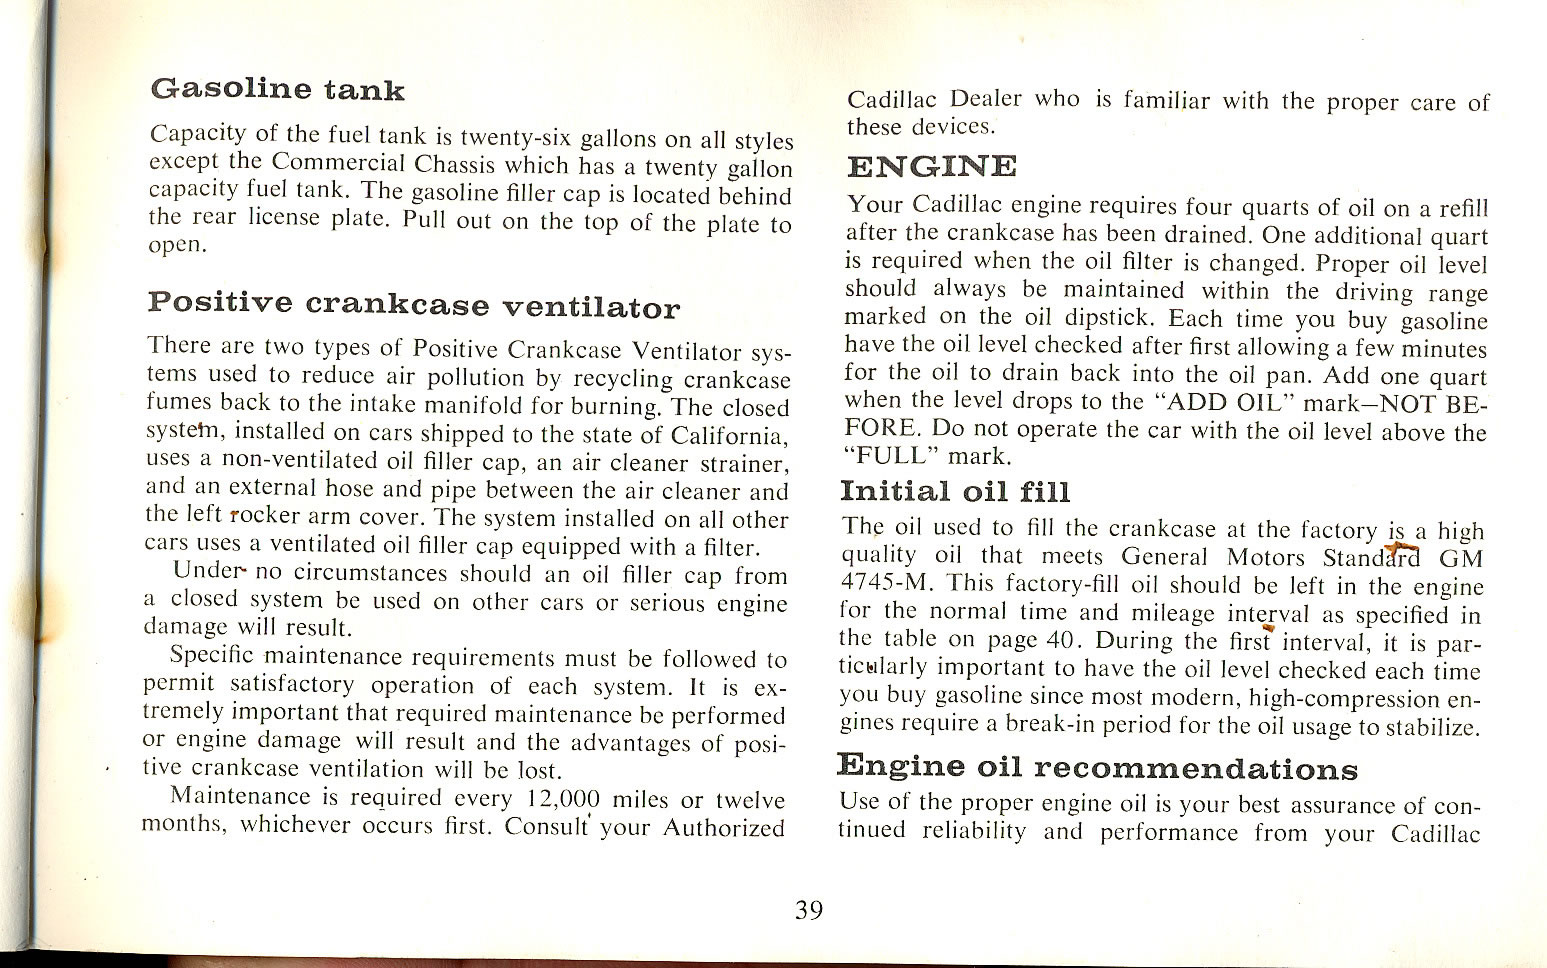 1965 Cadillac Manual-39